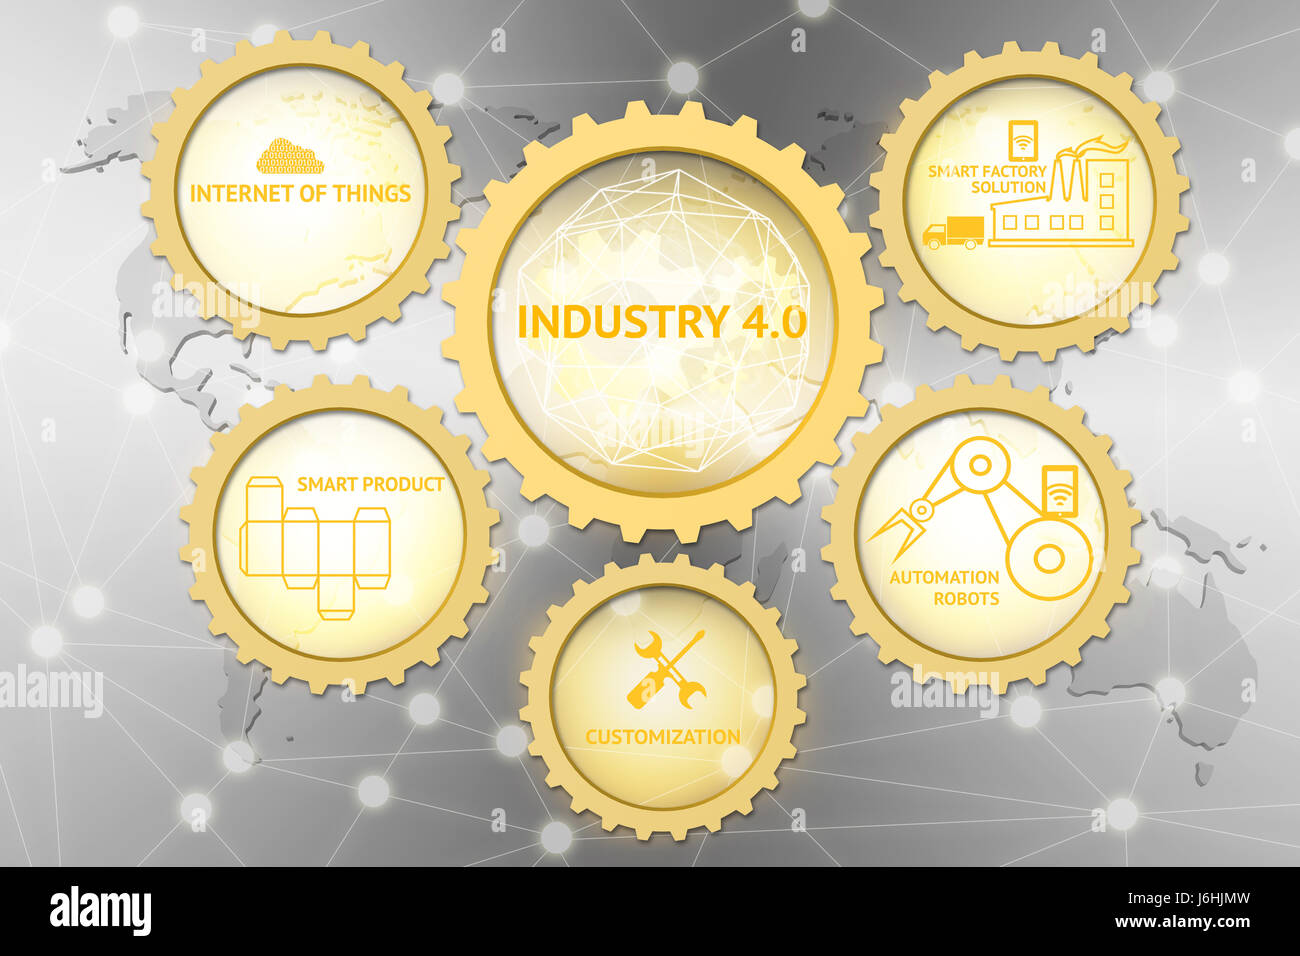 Industrielle 4.0 Konzept, goldene Zahnräder, Internet der Dinge, intelligente Fabrik Lösung, Anpassung, Automatisierung Roboter, Symbol "intelligente Produkt" mit Welt Stockfoto